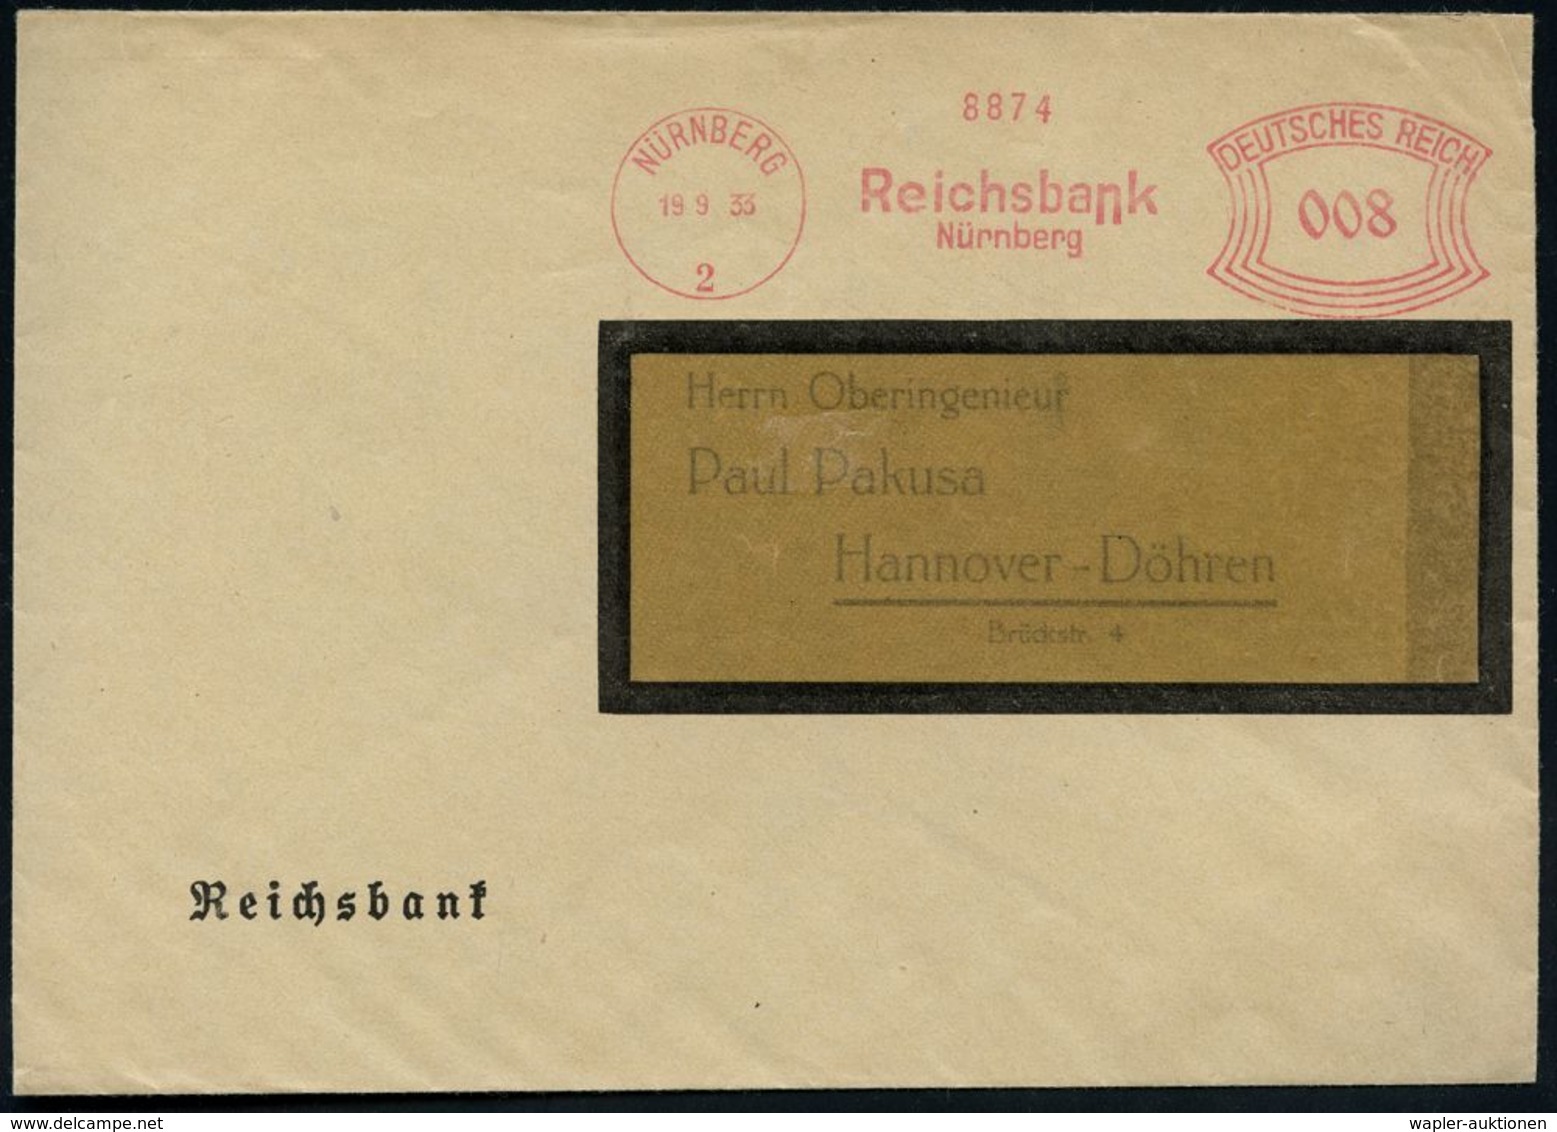 STAATSBANKEN / REICHSBANK / BUNDESBANK : NÜRNBERG/ 2/ Reichsbank 1933 (19.9.) AFS Auf Dienst-Bf.: Reichsbank (Dü.E-1CAh) - Non Classificati